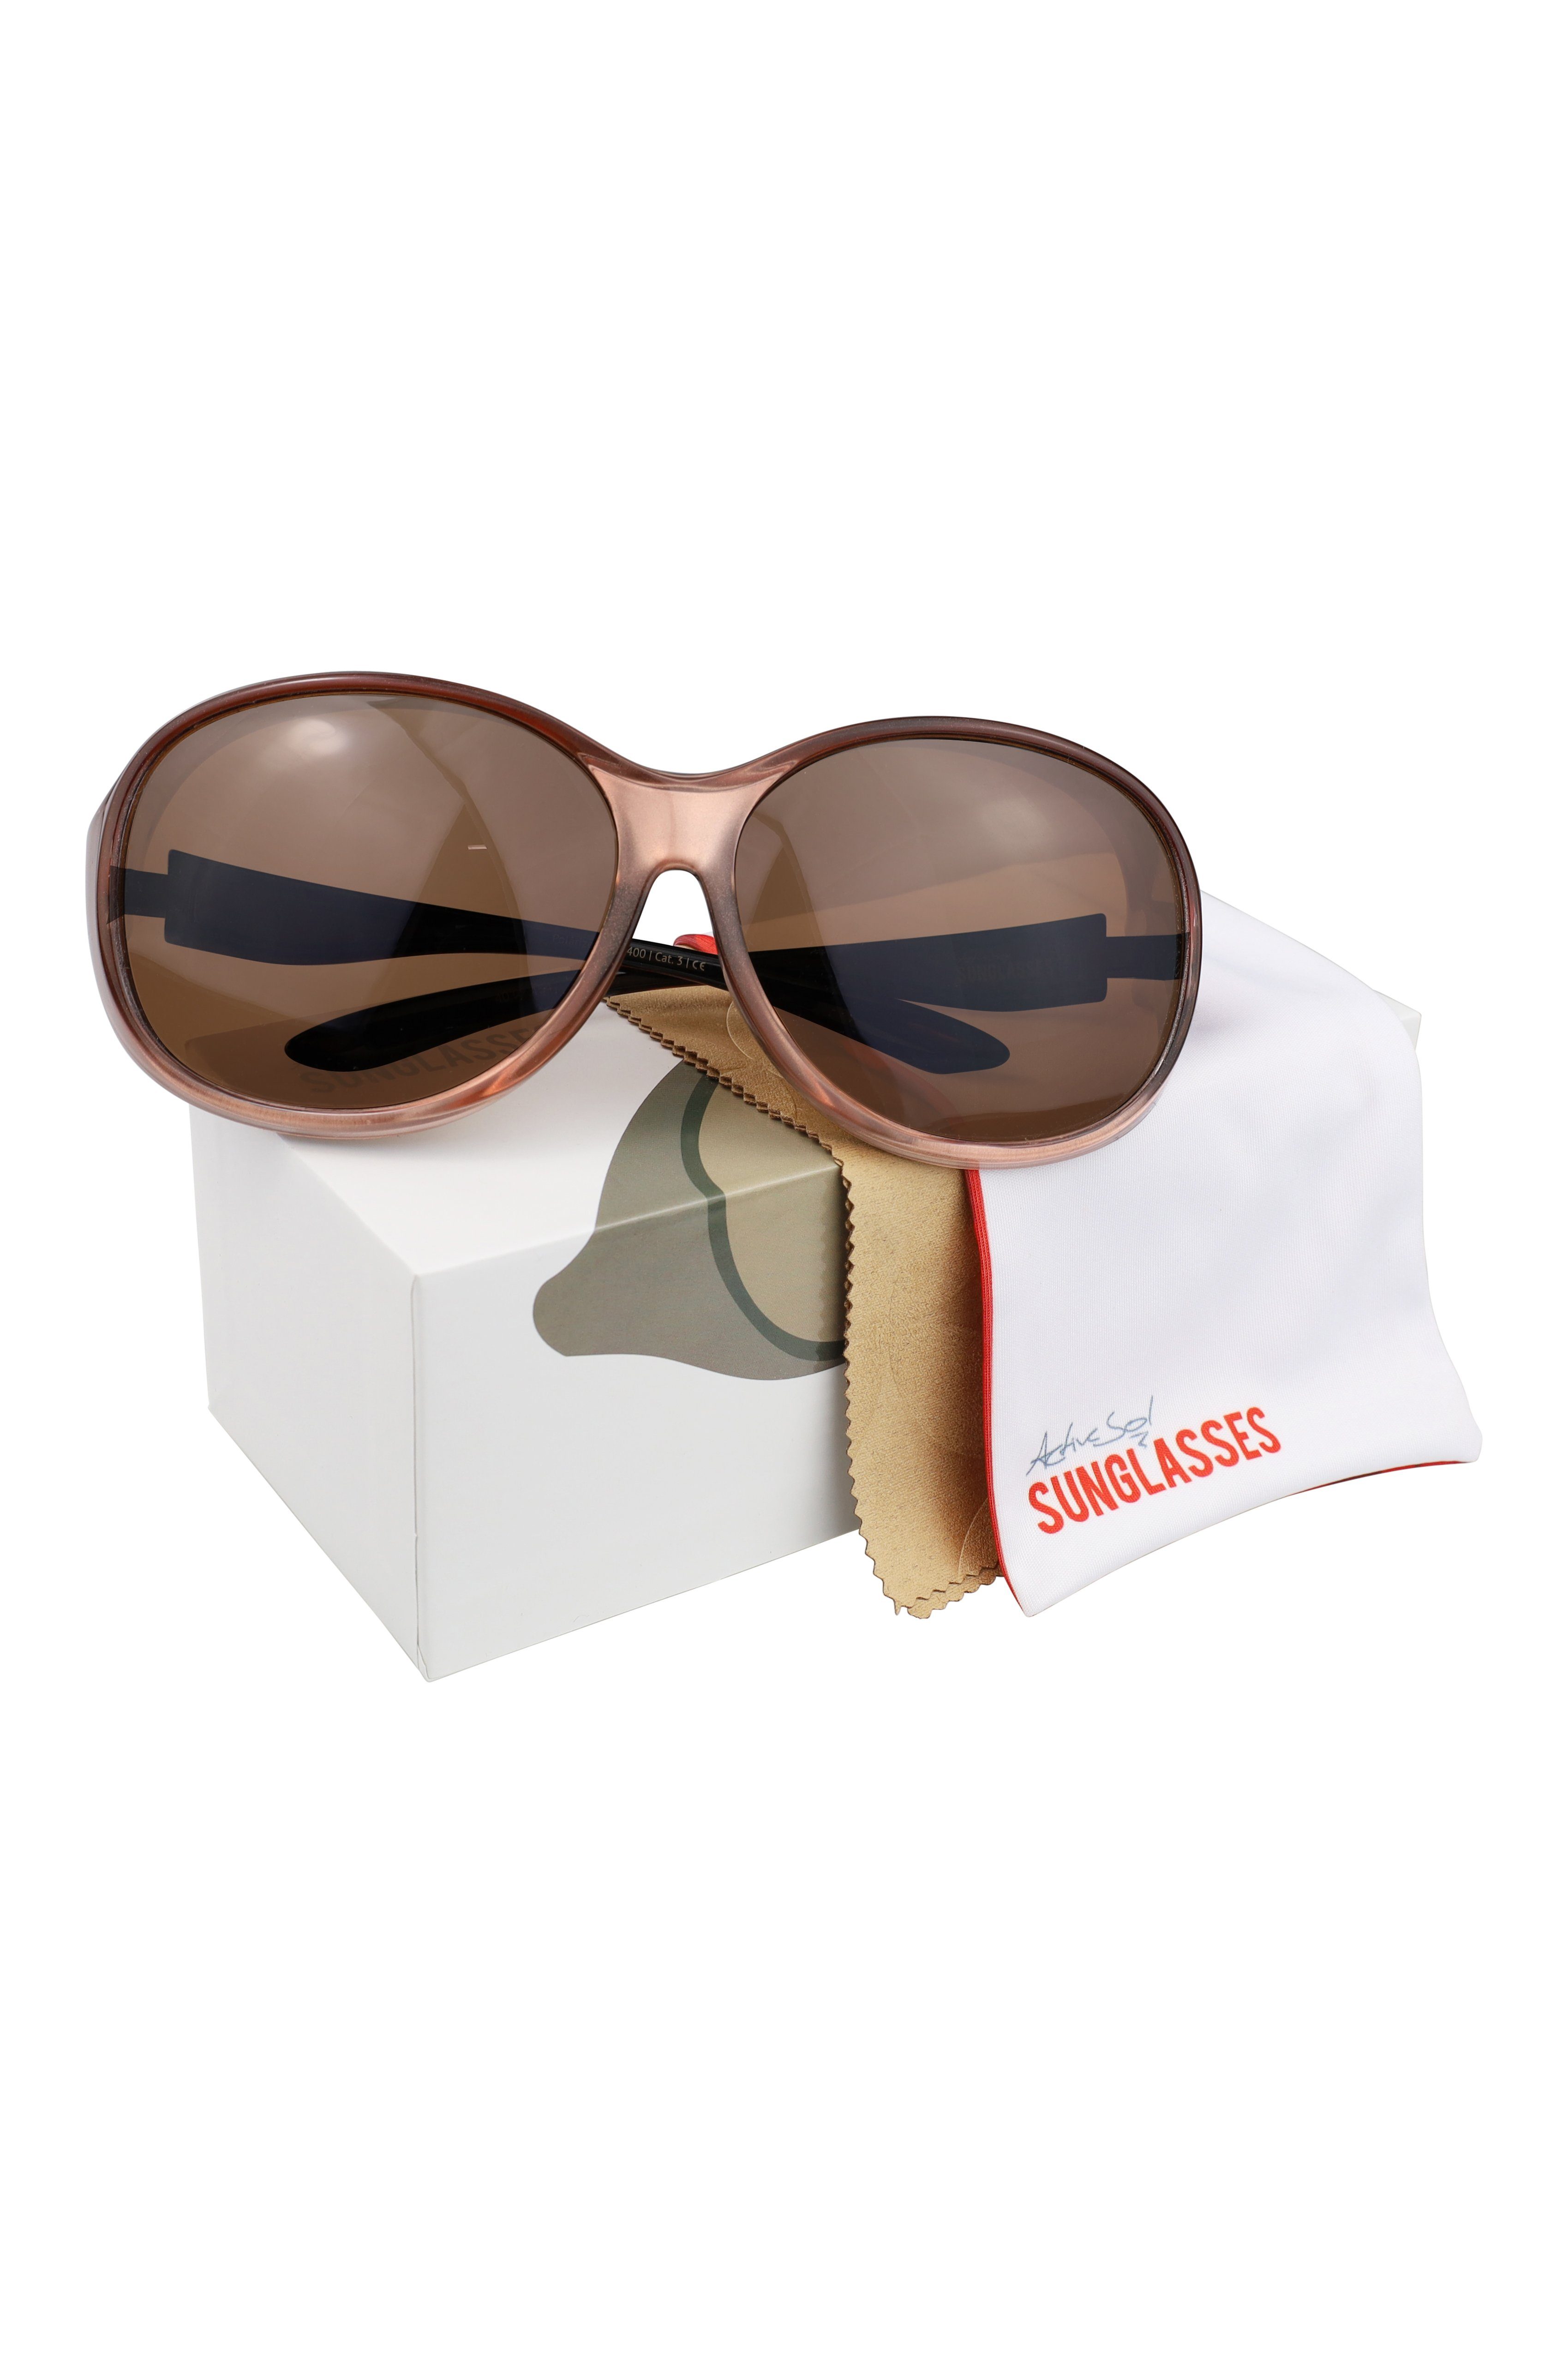 Überziehsonnenbrille Rosé SUNGLASSES ActiveSol (inklusive Vintage Damen Stil und Brillenputztuch) MEGA Schiebebox Sonnenbrille